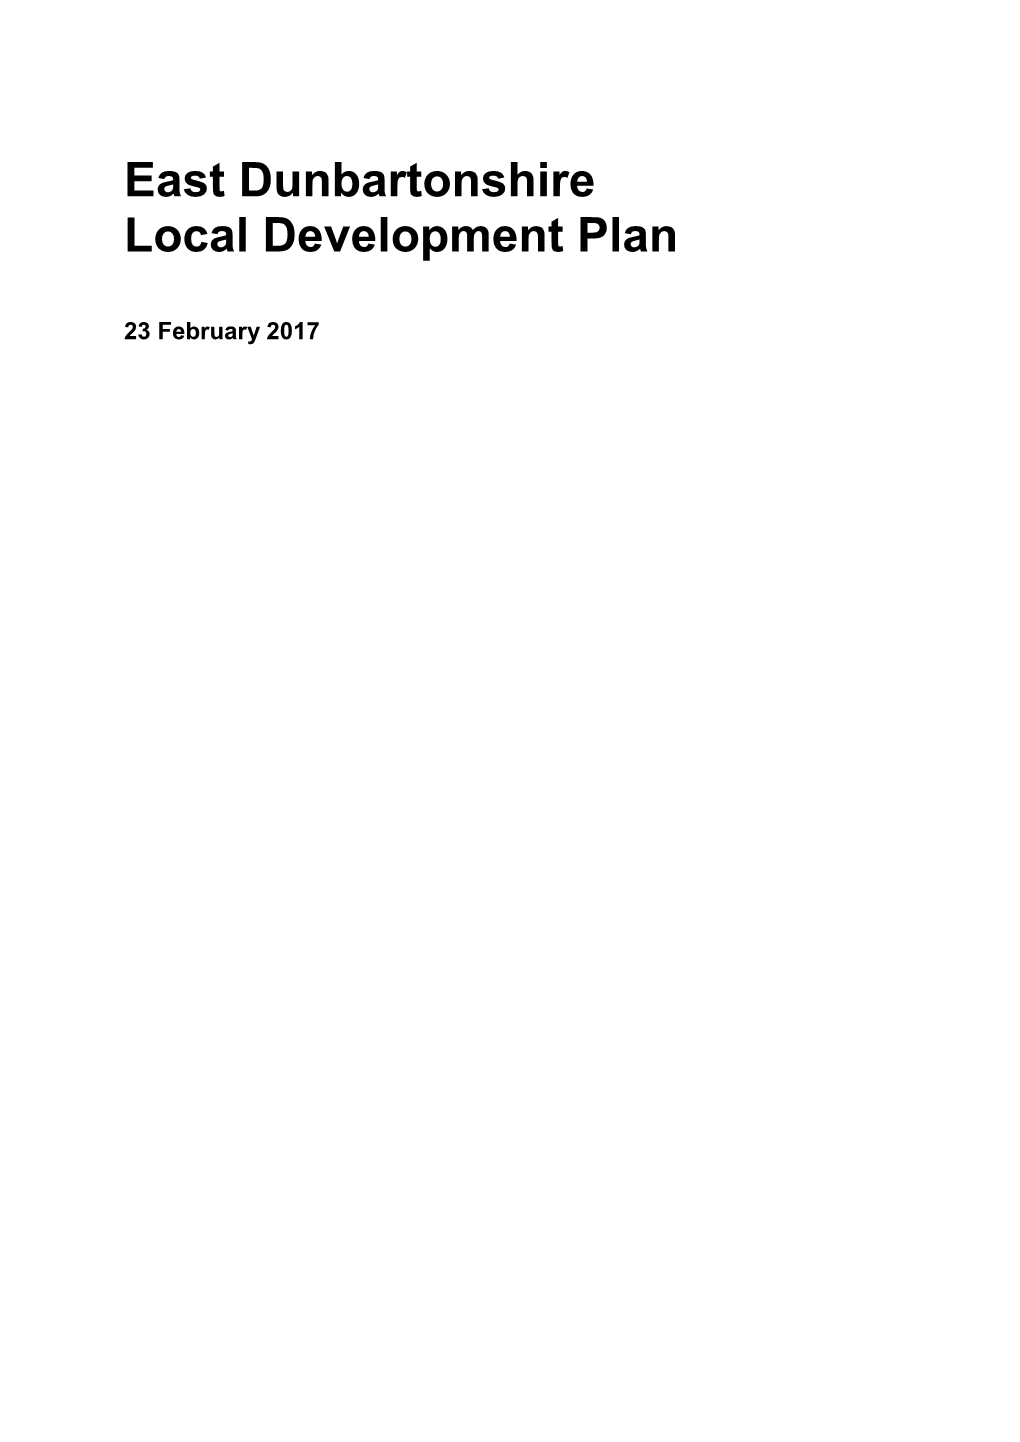 East Dunbartonshire Local Development Plan